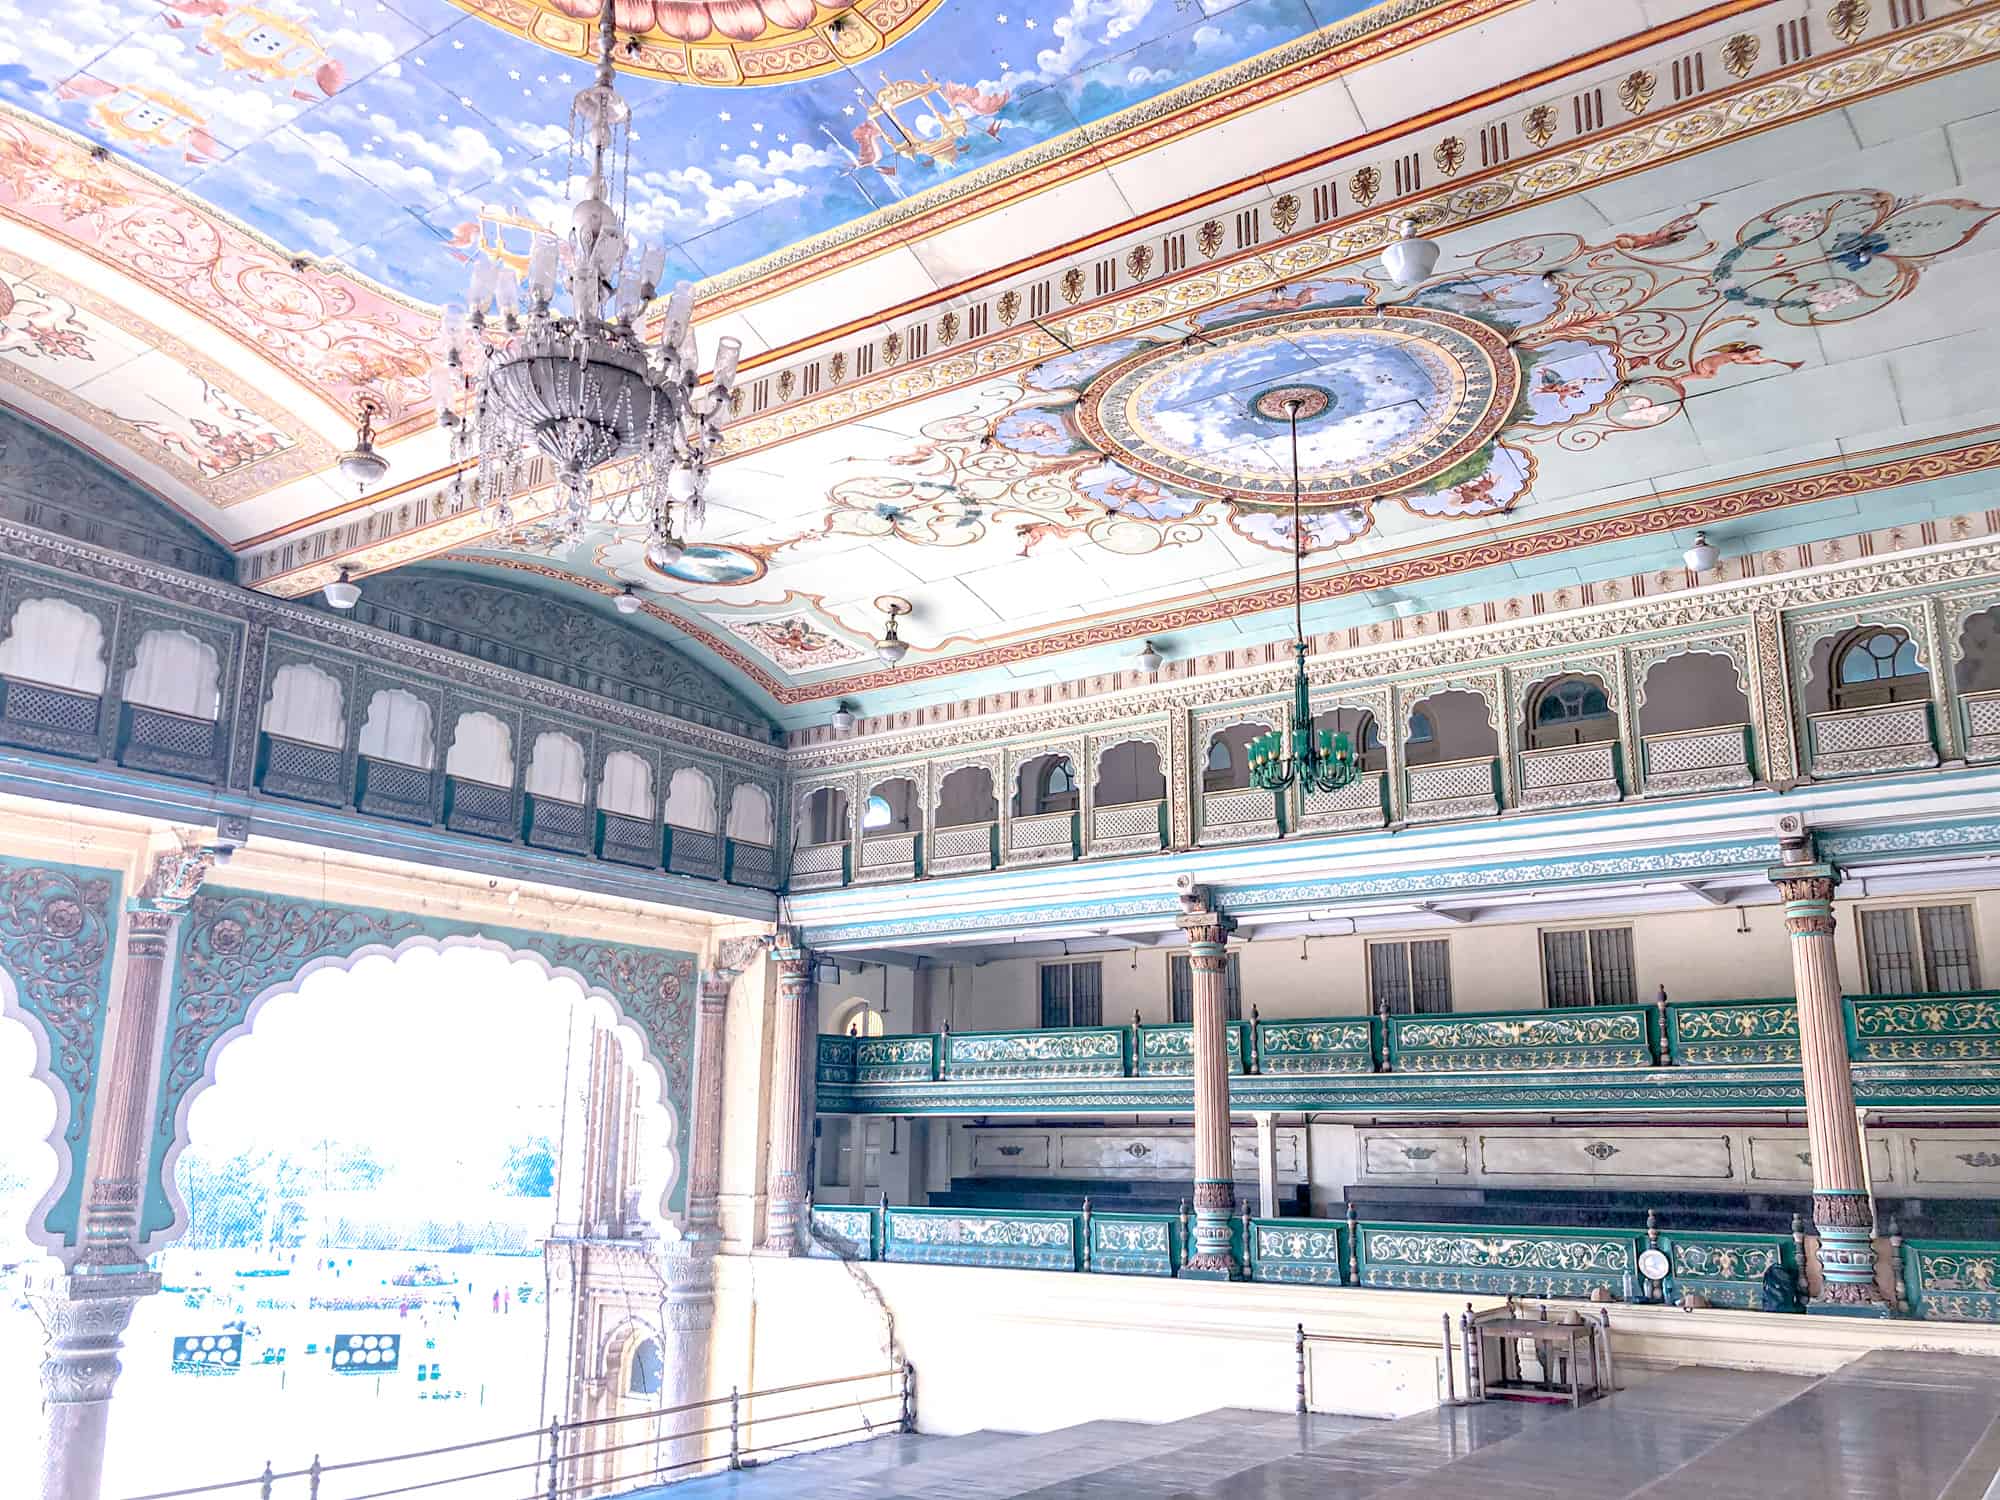 India - Karnataka - Mysore Palace-inside the Durbar Hall - part of Mysore Palace History